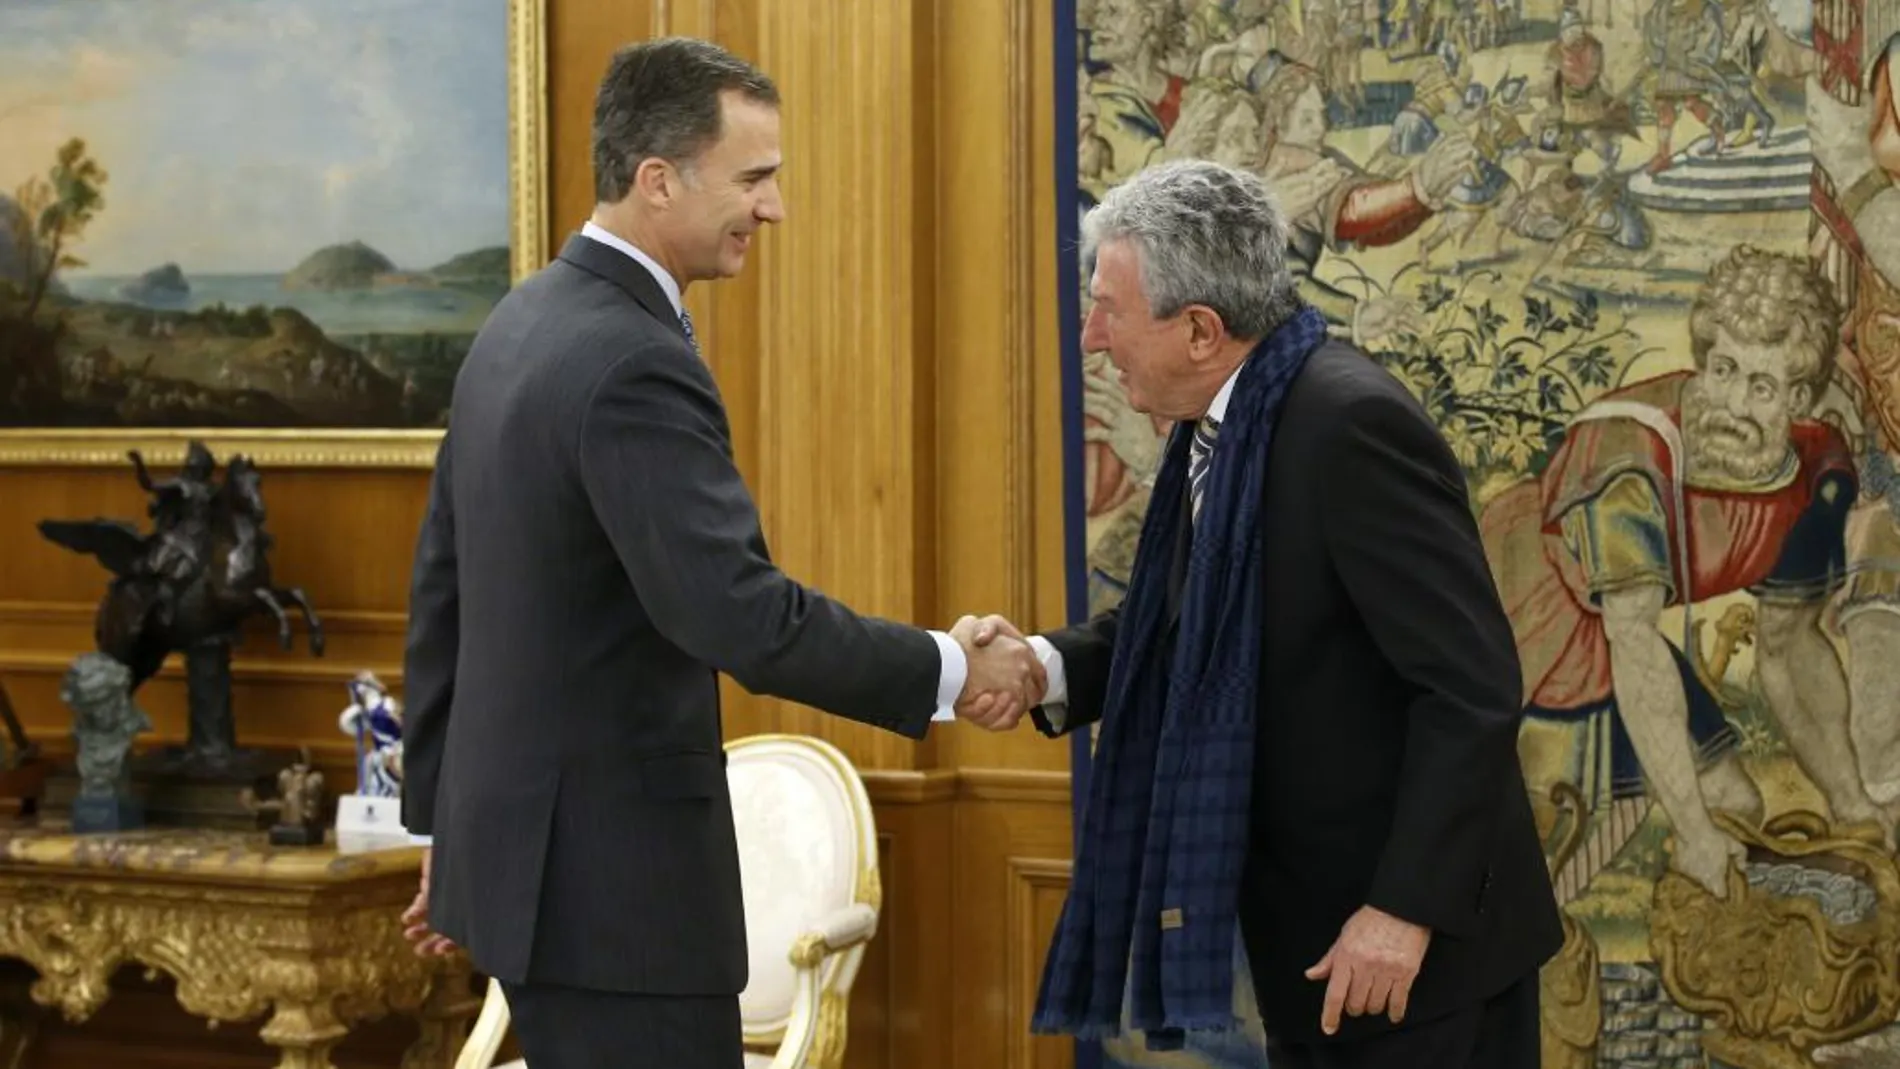 El Rey Felipe VI saluda al diputado de Nueva Canarias Pedro Quevedo en el Palacio de la Zarzuela